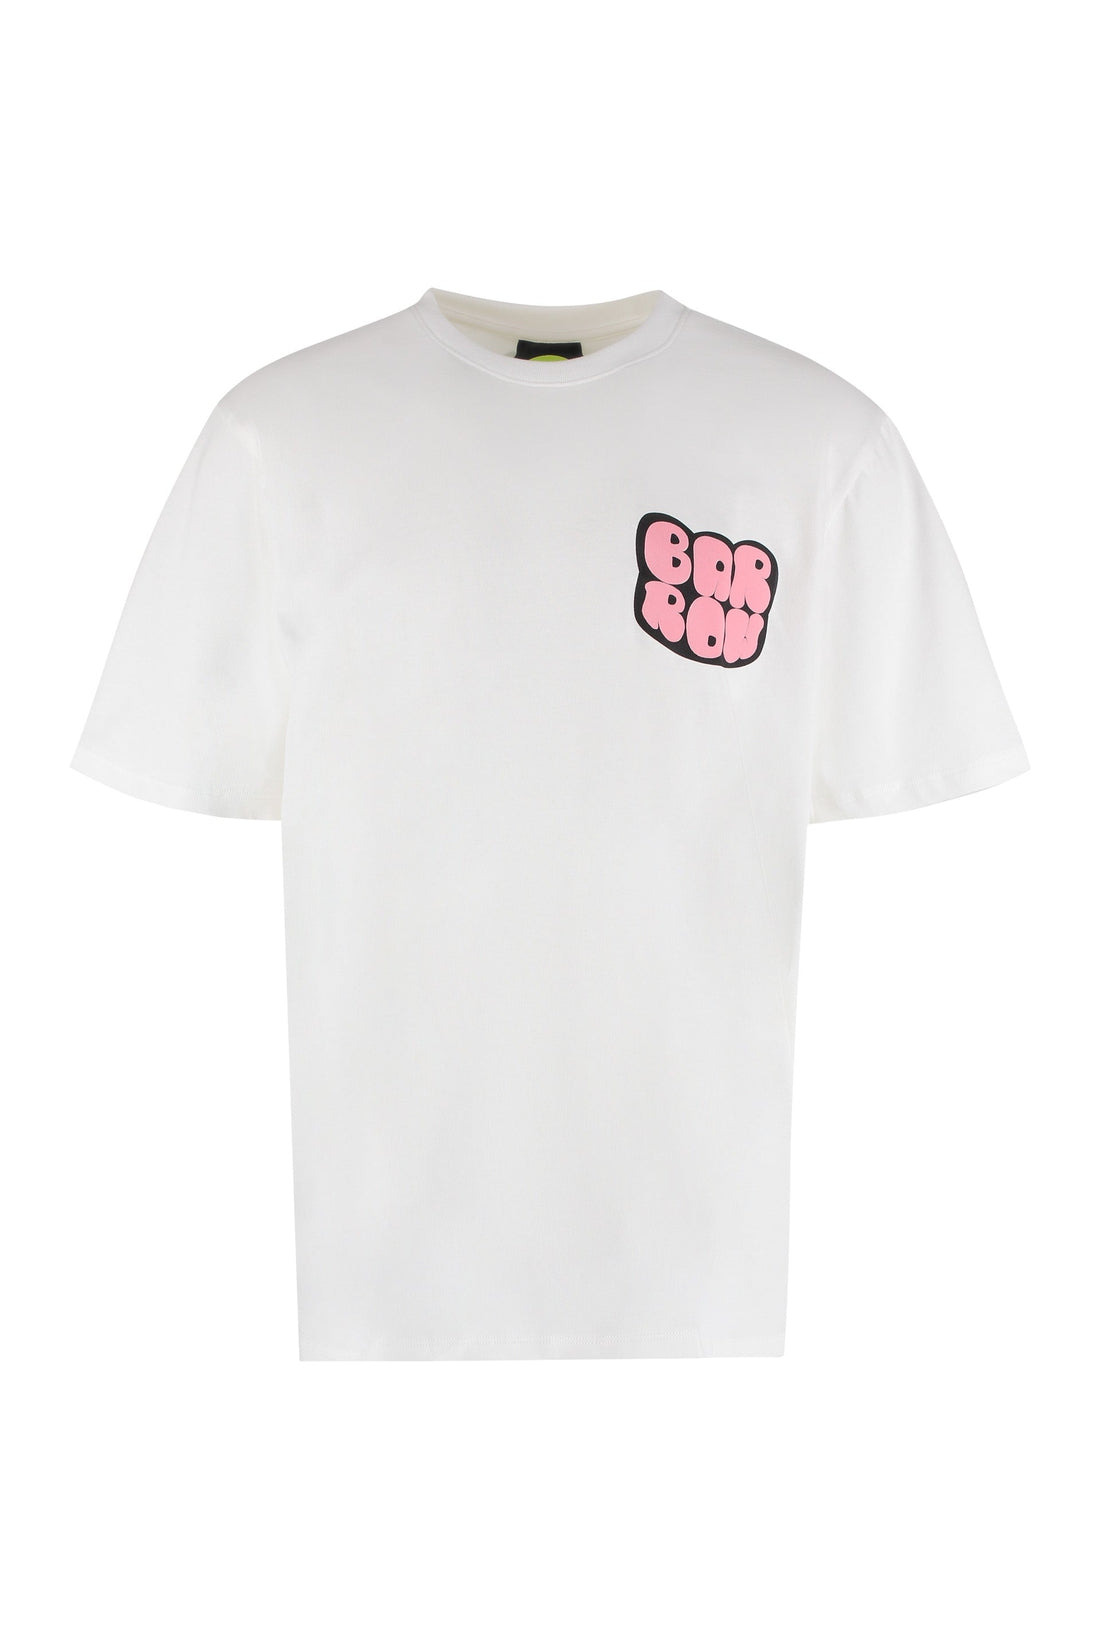 Barrow-OUTLET-SALE-Cotton T-shirt-ARCHIVIST